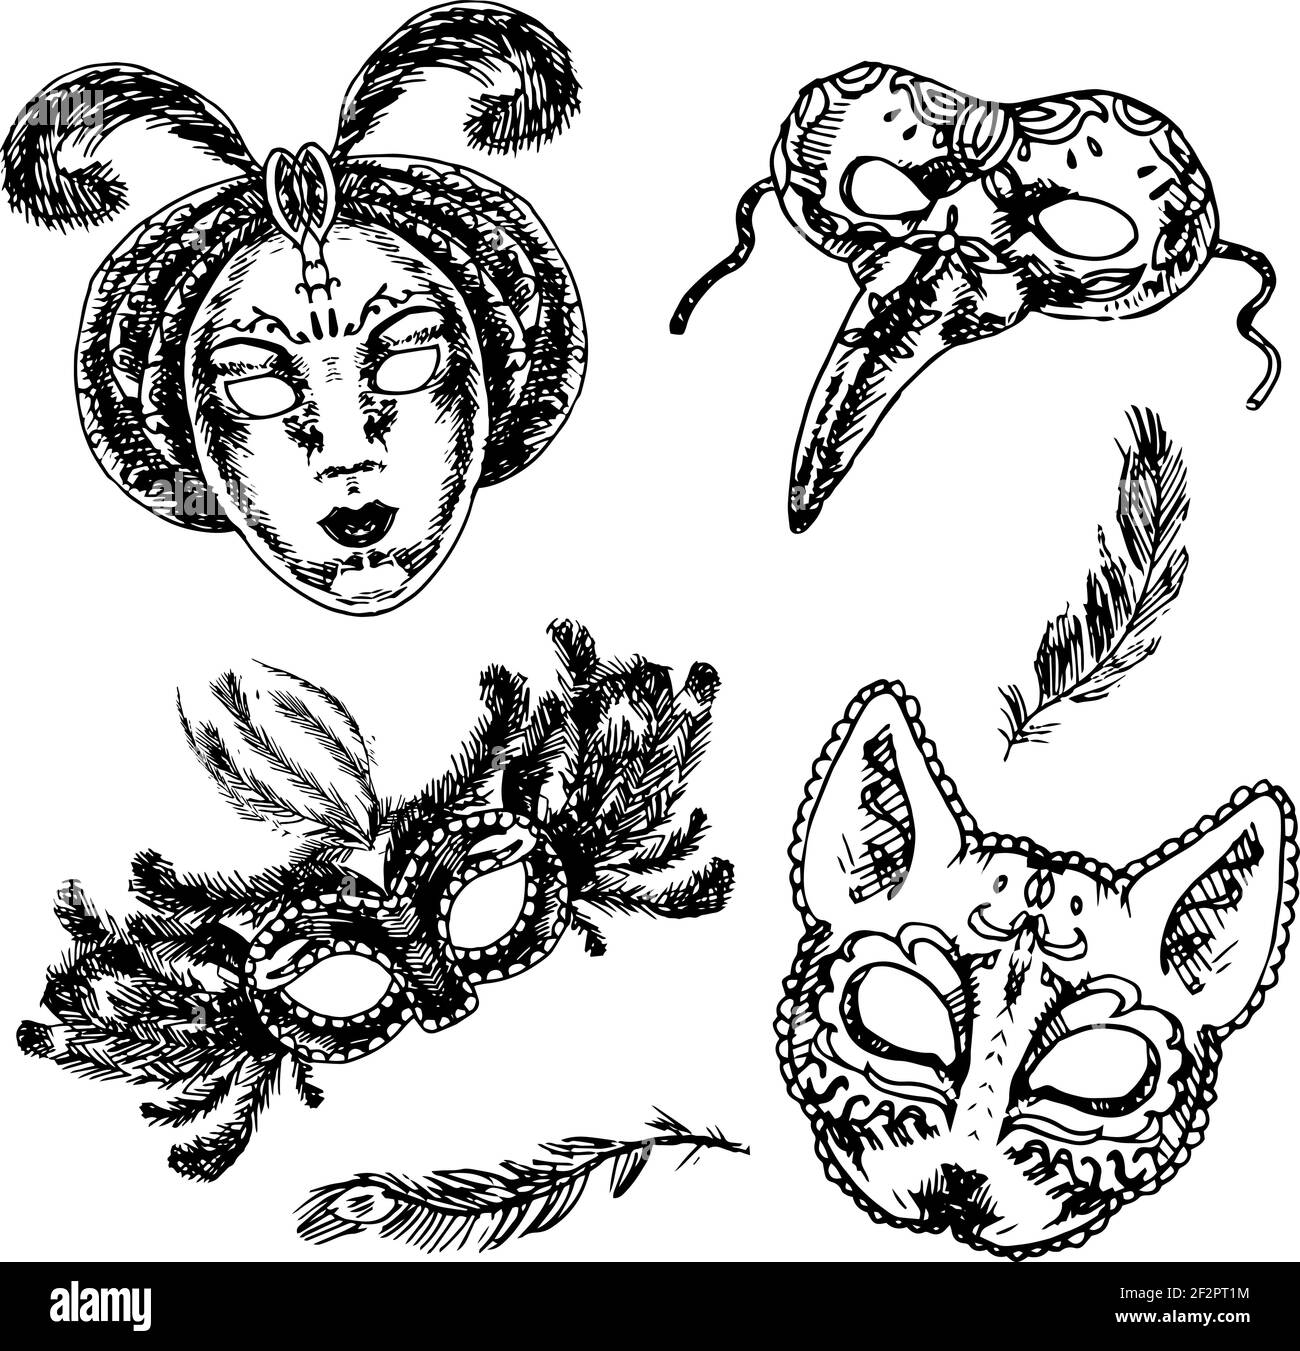 Carnevale Veneziano stile pieno viso e occhi piuma maschere festive le icone impostano l'illustrazione isolata del vettore di doodle dello schizzo Illustrazione Vettoriale